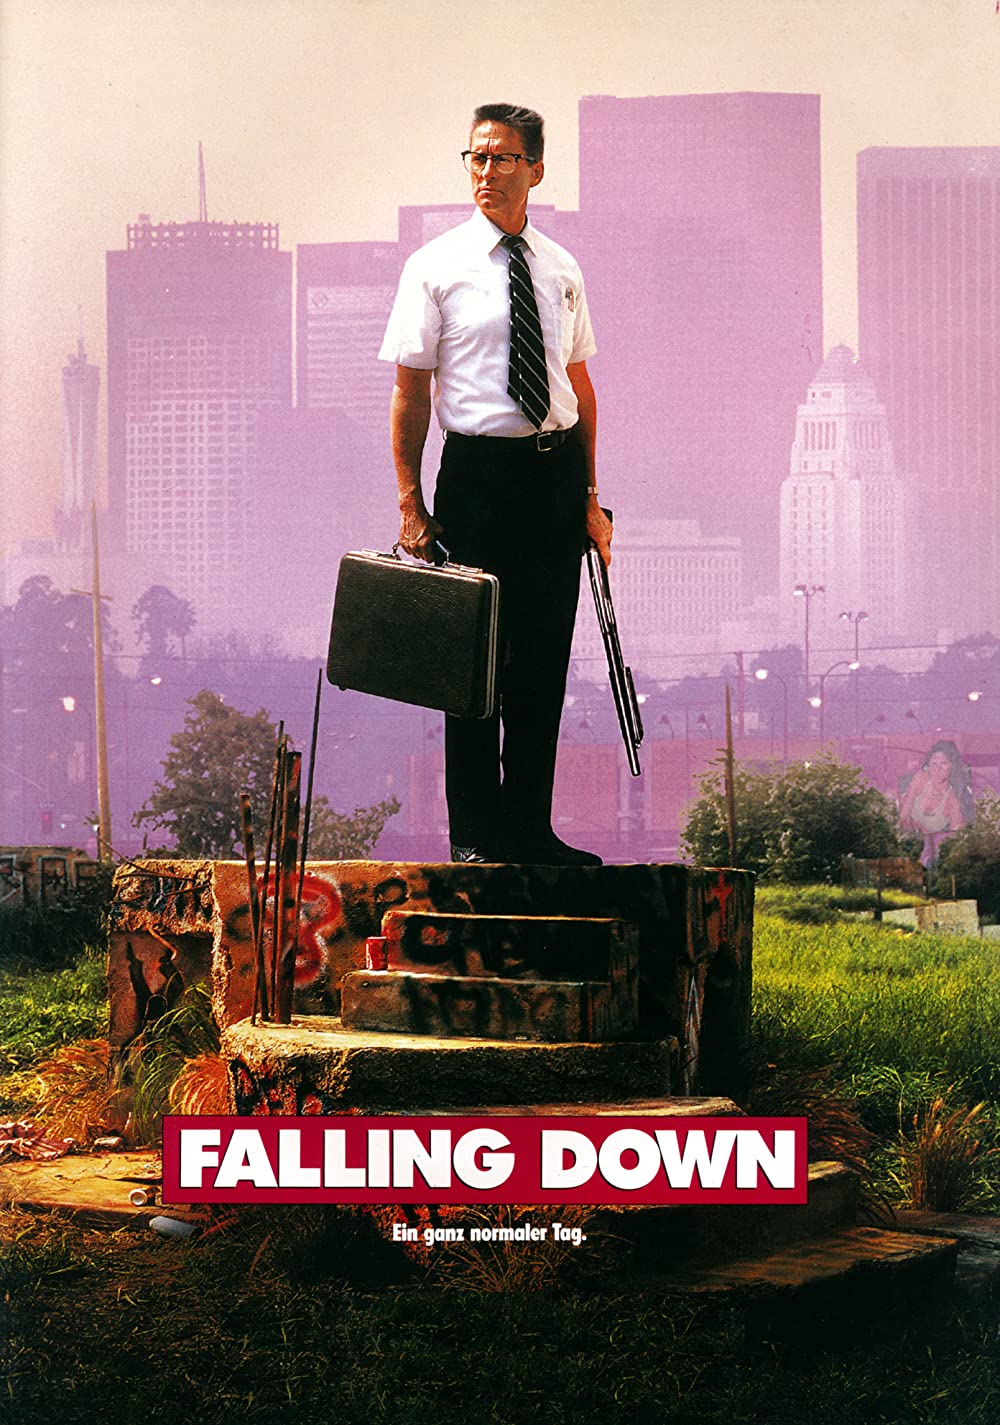 Filmbeschreibung zu Falling Down